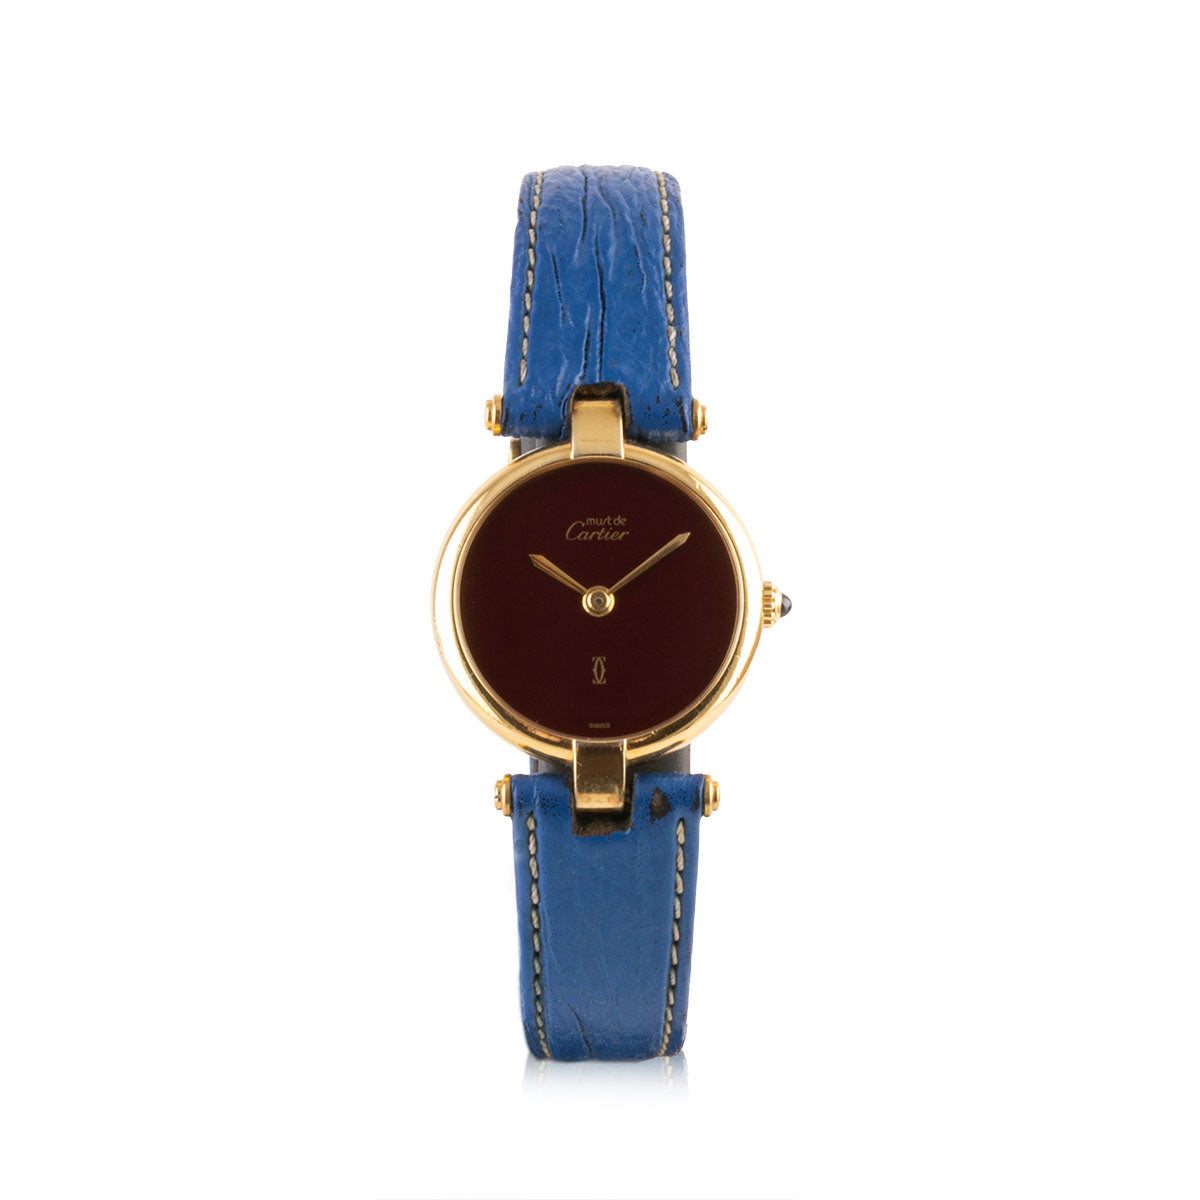 Second-hand watch - Cartier - Must - 1600€